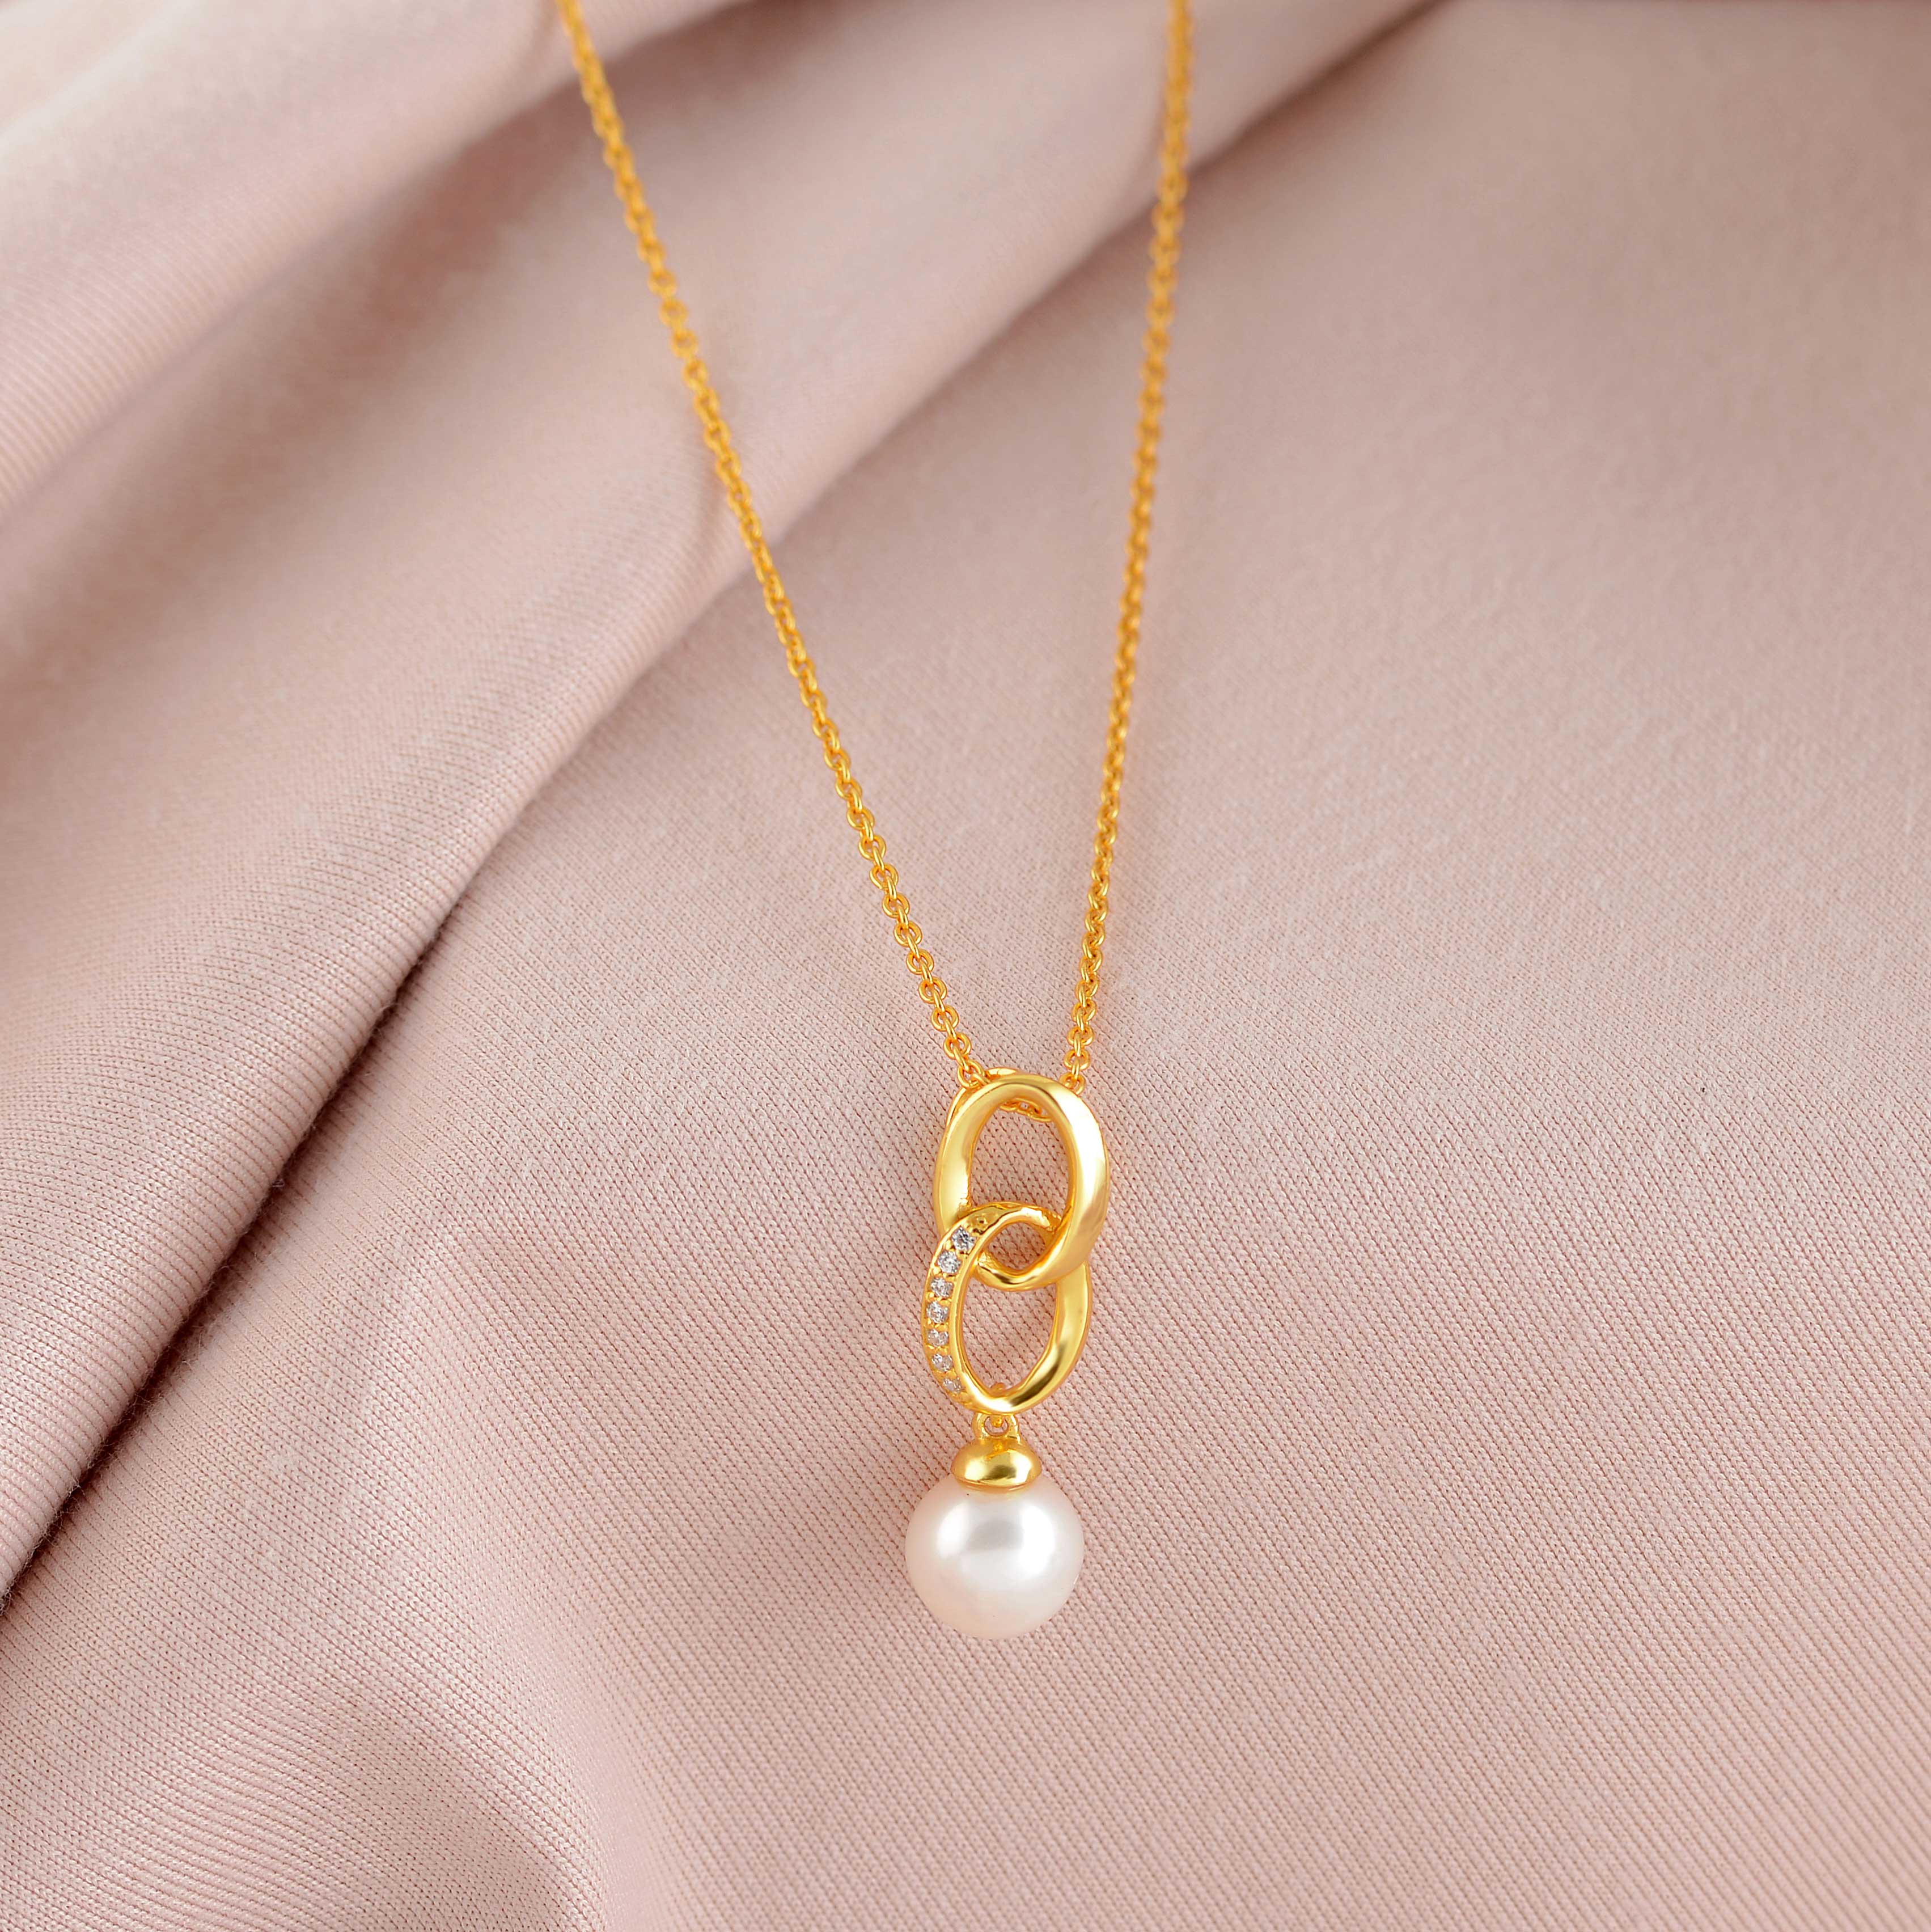 Stylish Freshwater Pearl Pendant Necklace